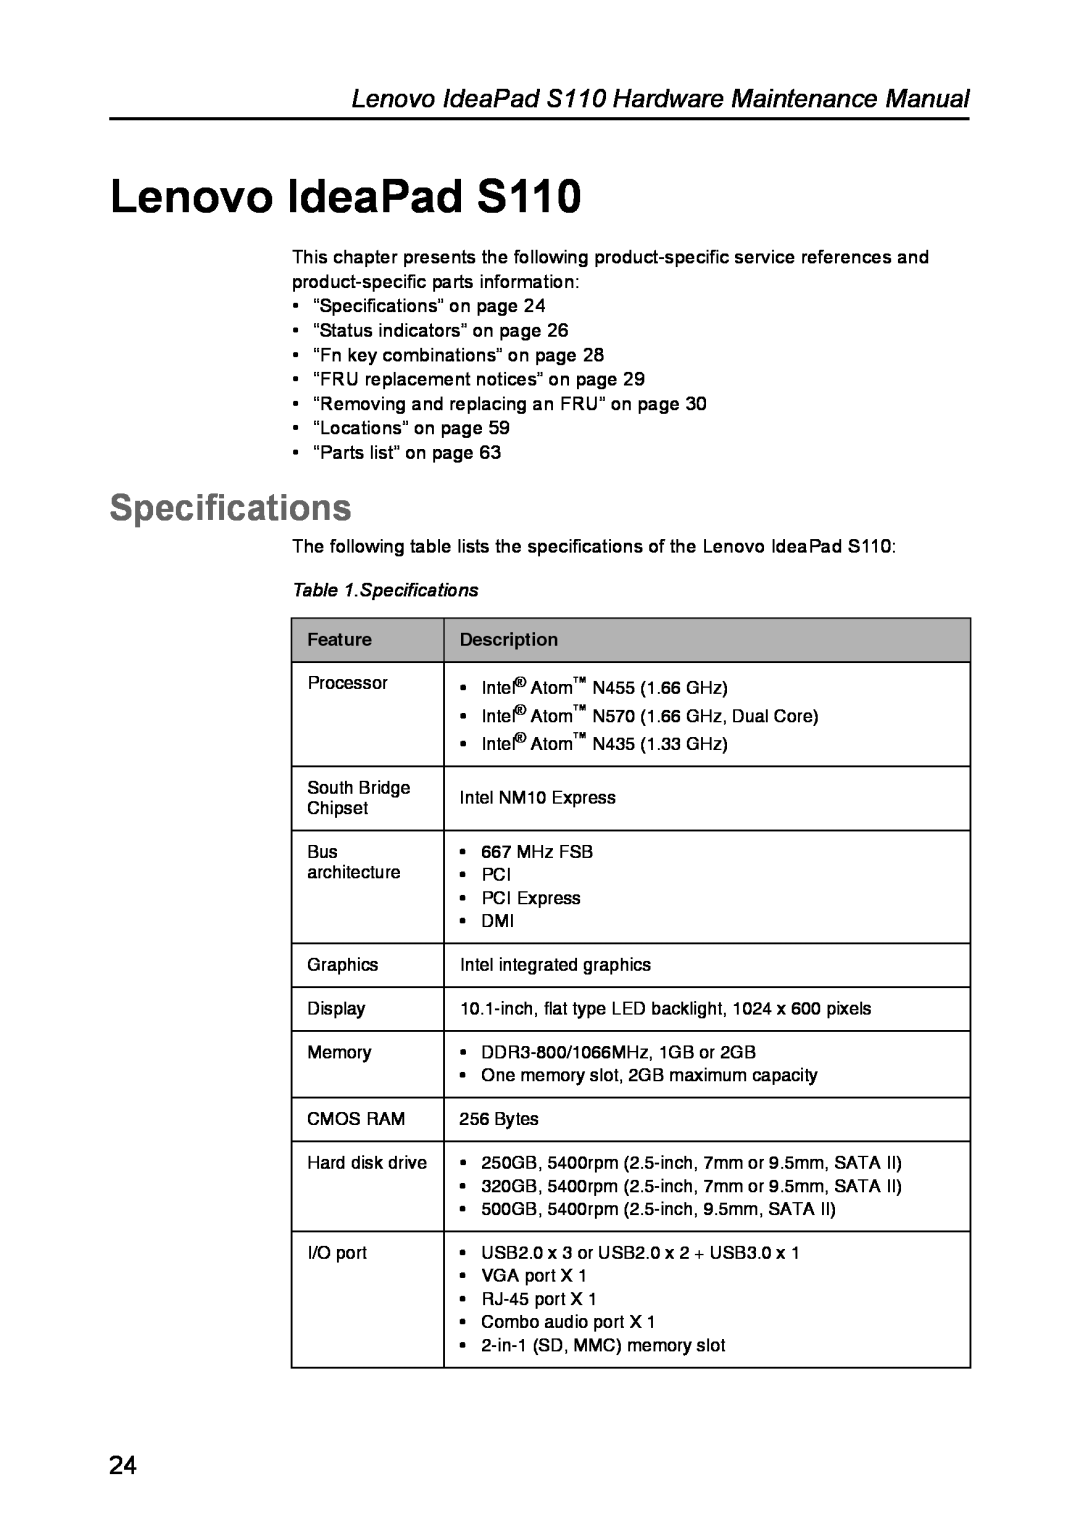 Lenovo manual Specifications, Lenovo IdeaPad S110 Hardware Maintenance Manual 